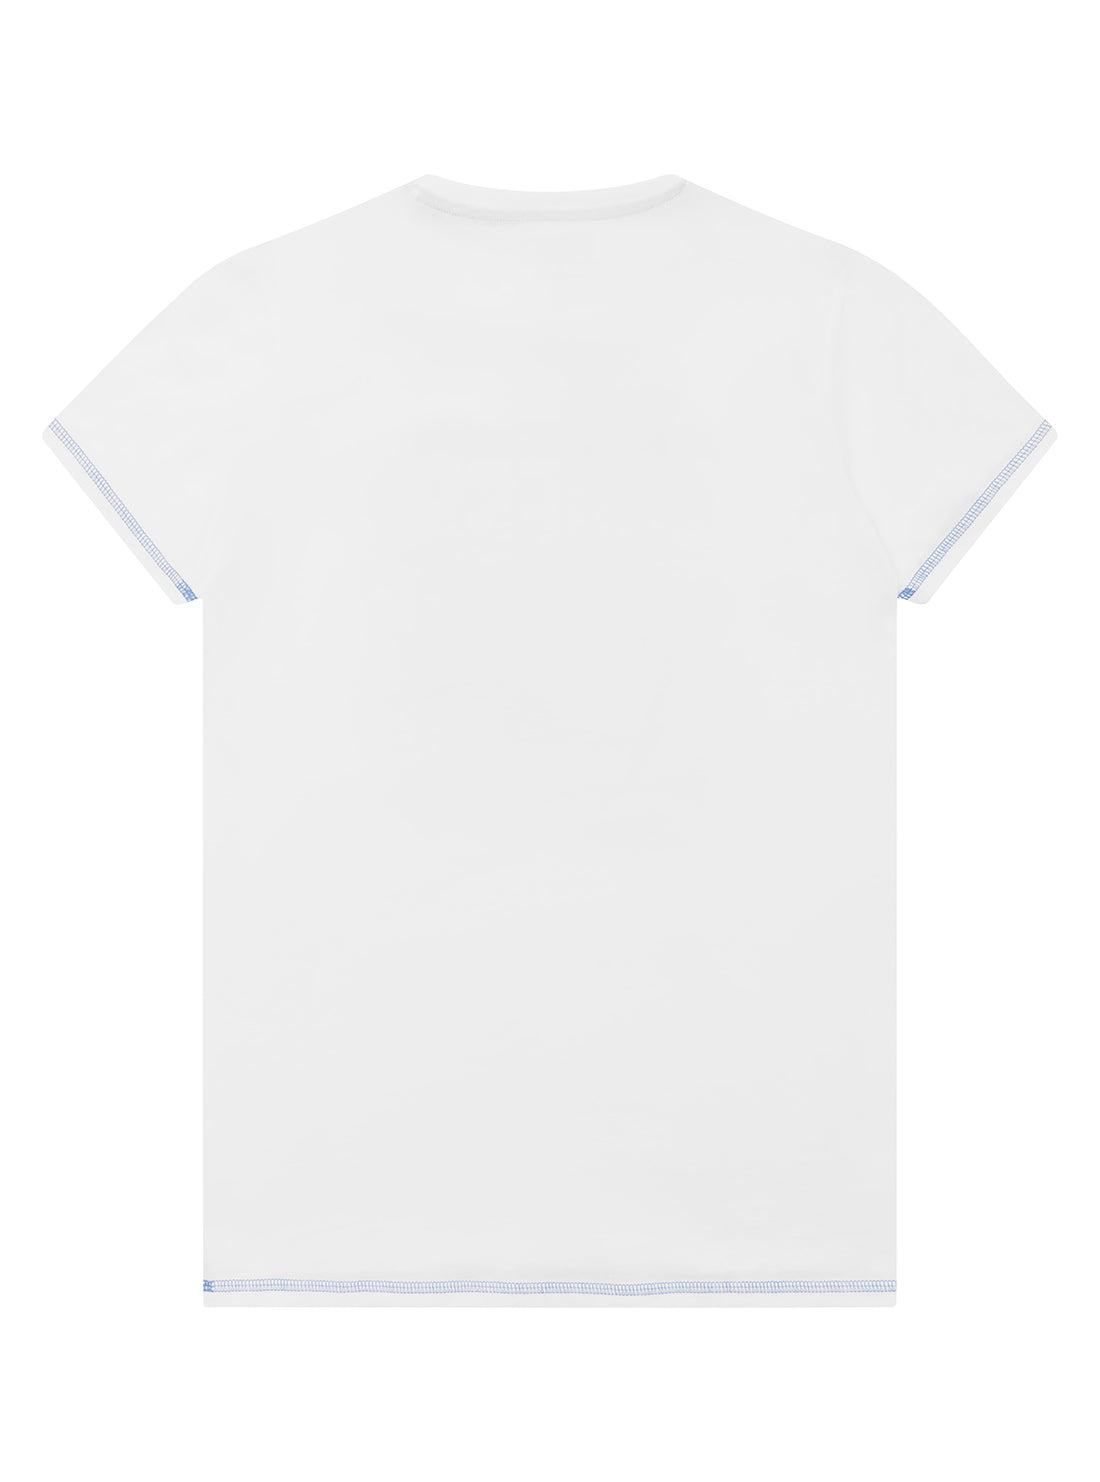 GUESS Big Boy White Graphic Logo T-Shirt (7-16) L2YI00K8HM0 Back View